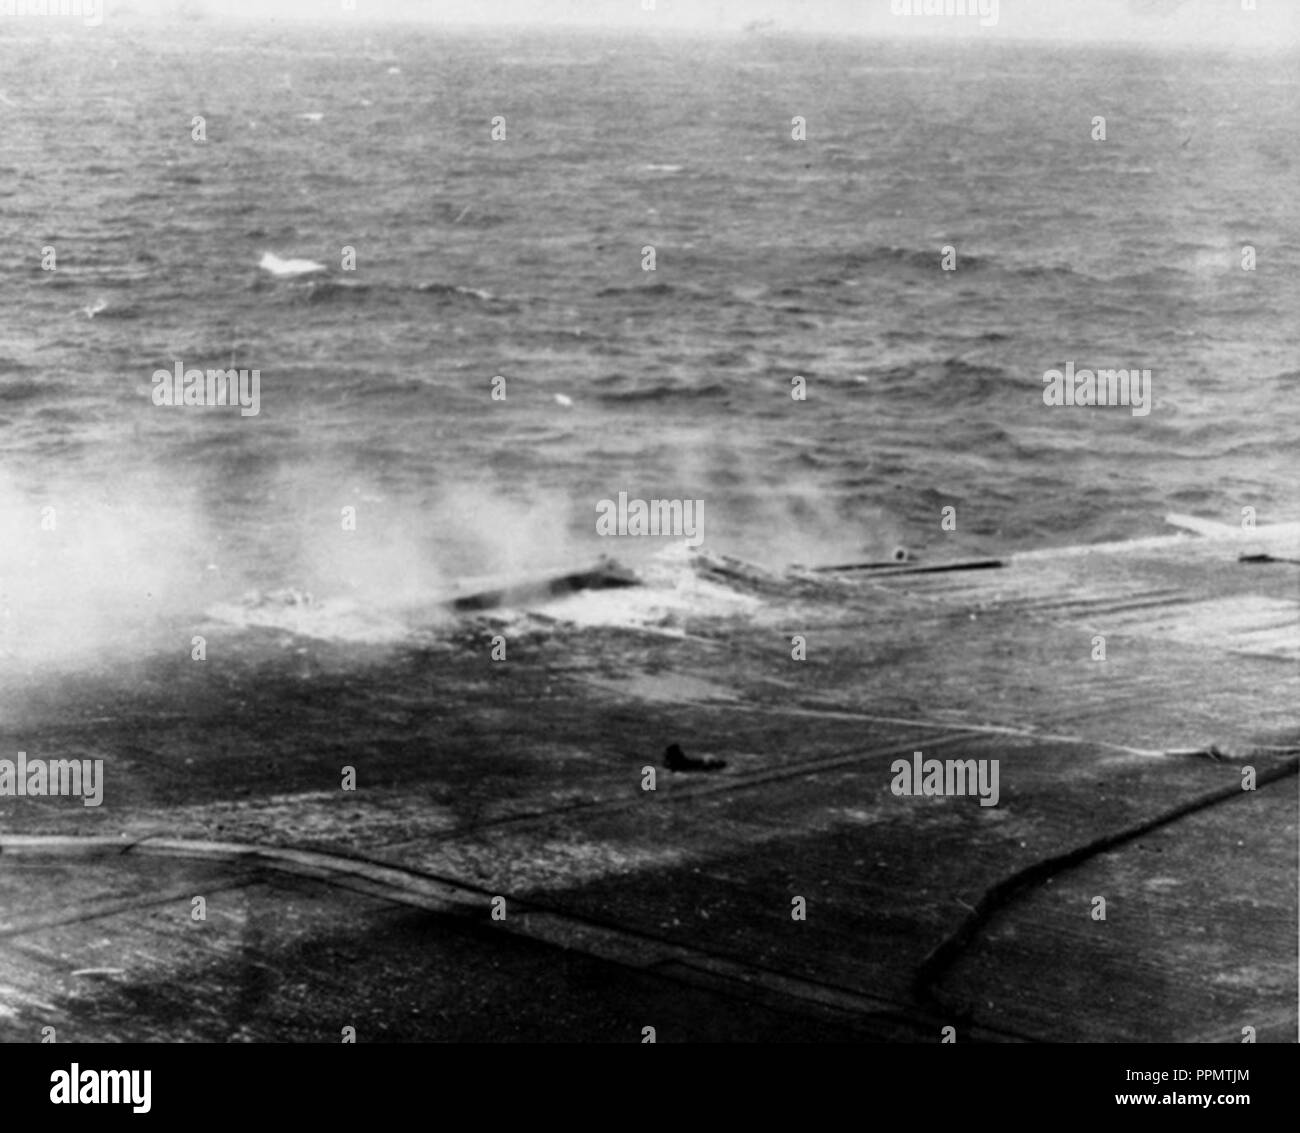 Dommages causés par les bombes sur l'USS Lexington (CV-2) au cours de la bataille de la mer de corail le 8 mai 1942 Banque D'Images